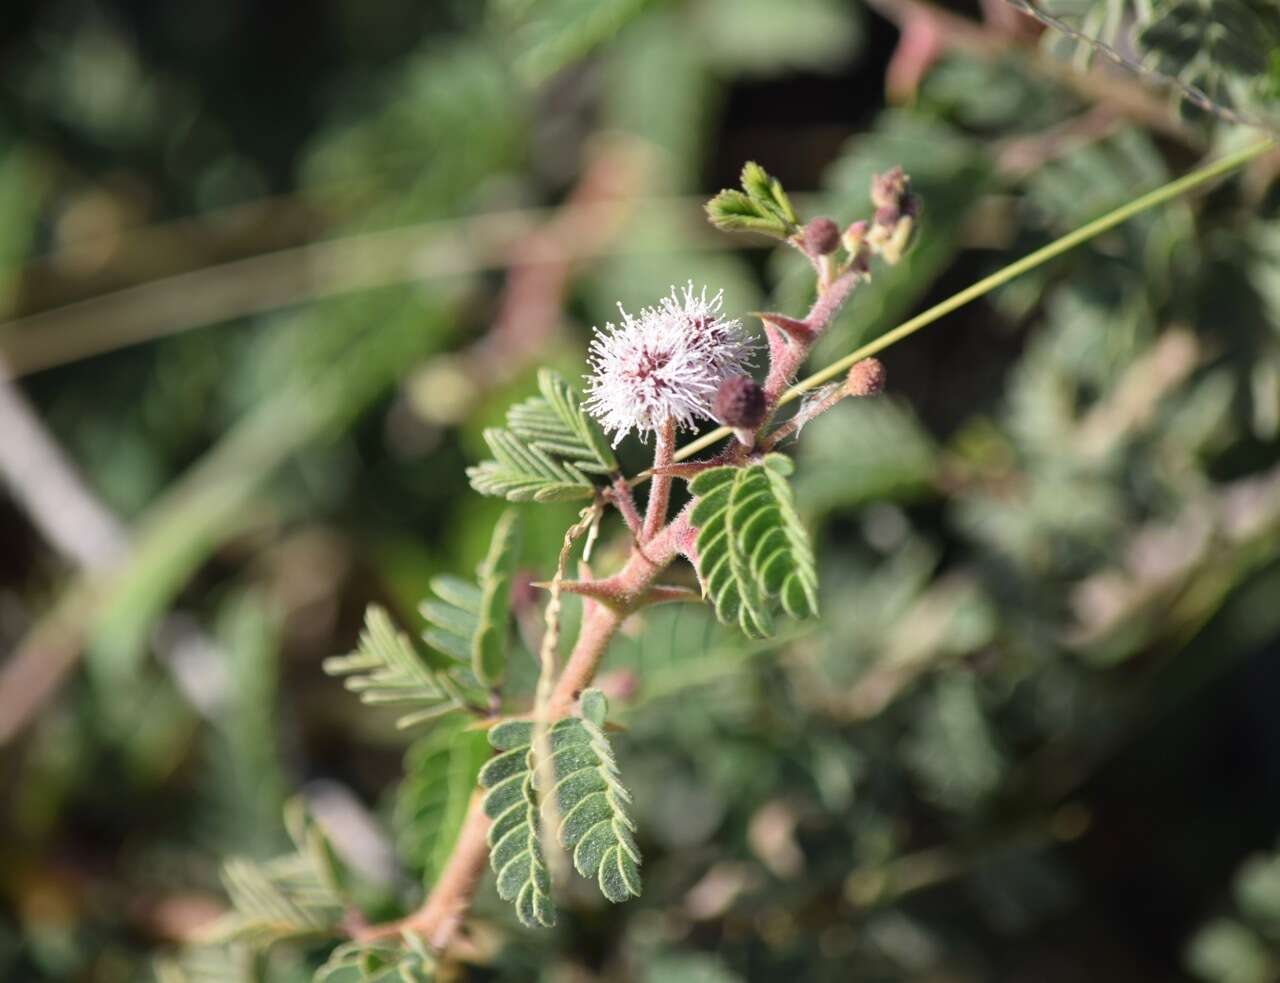 Image of <i>Mimosa tricephala</i> var. <i>xanti</i> (A. Gray) Chehaibar & R. Grether